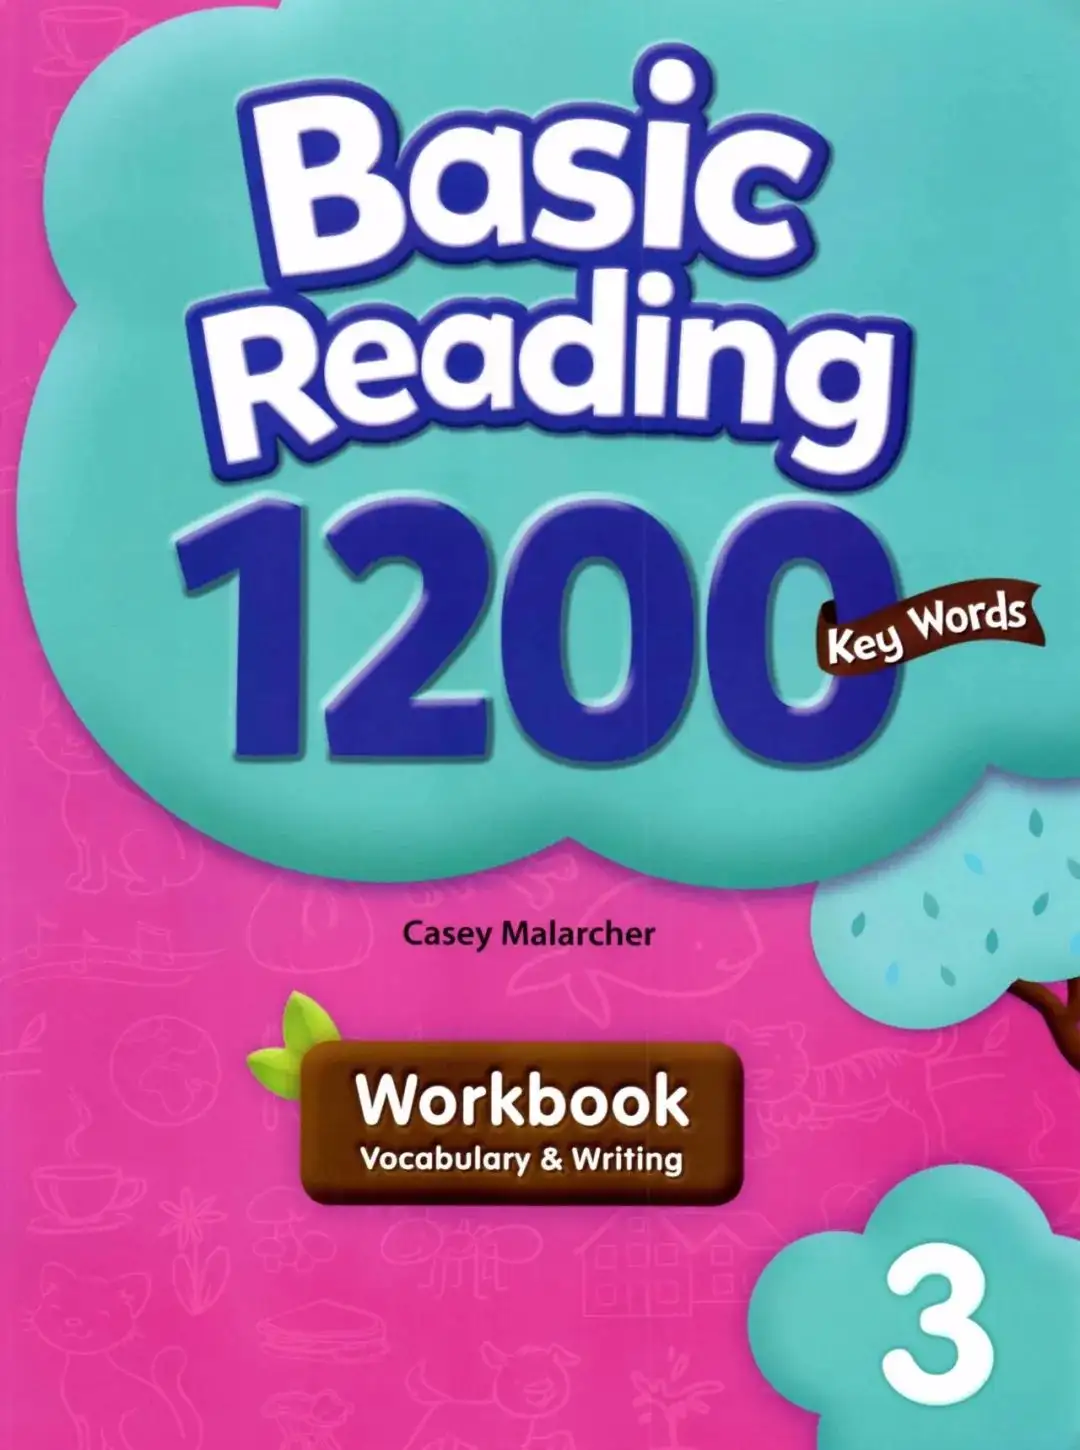 免费领！英语阅读训练教材《Basic Reading 1200 key words》 - 知乎